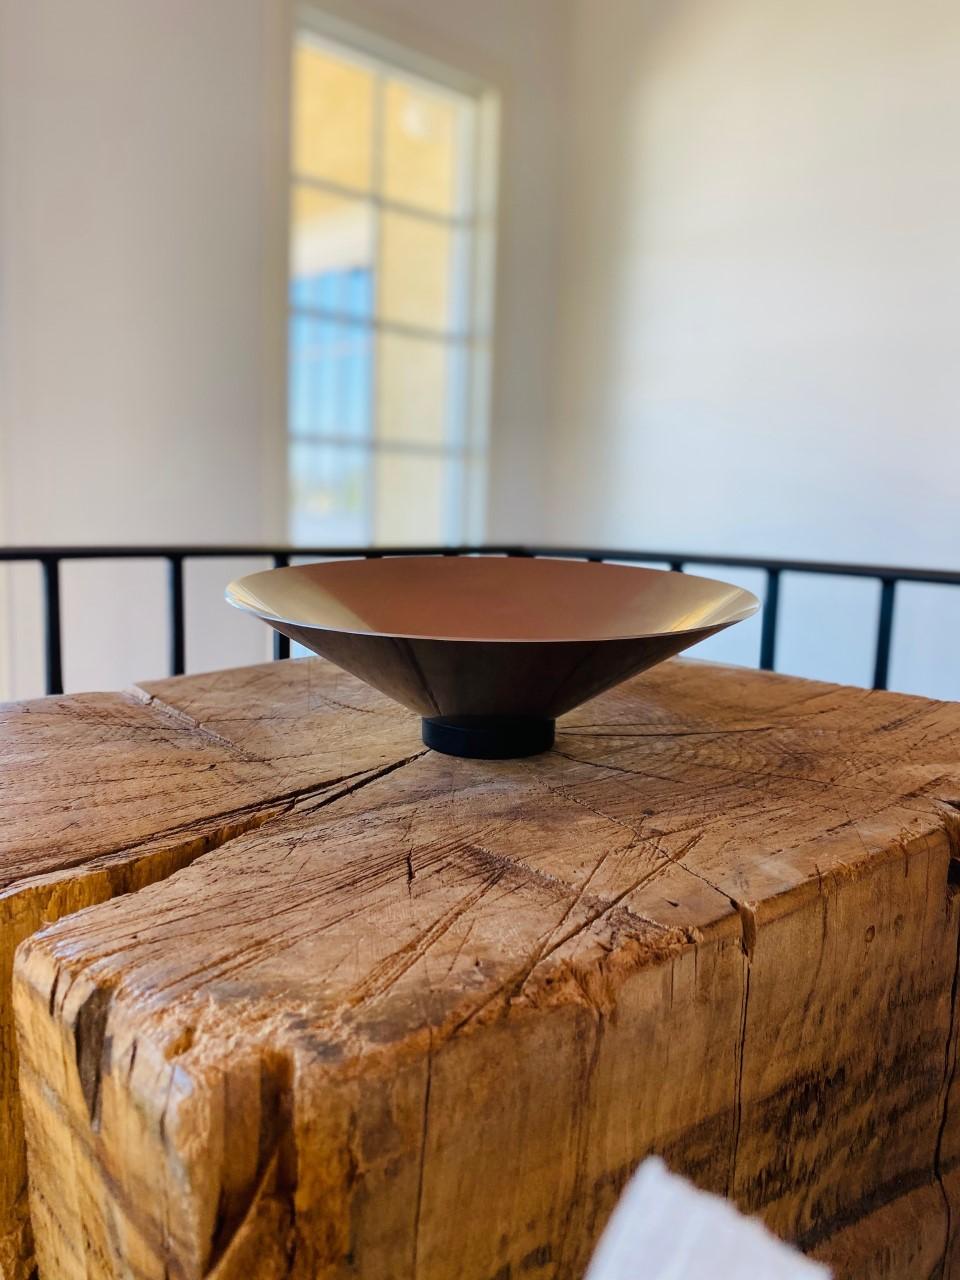 Hand-Crafted Vintage Stainless Steel “Complet” Bowl by Jørgen Møller for Royal Copenhagen For Sale